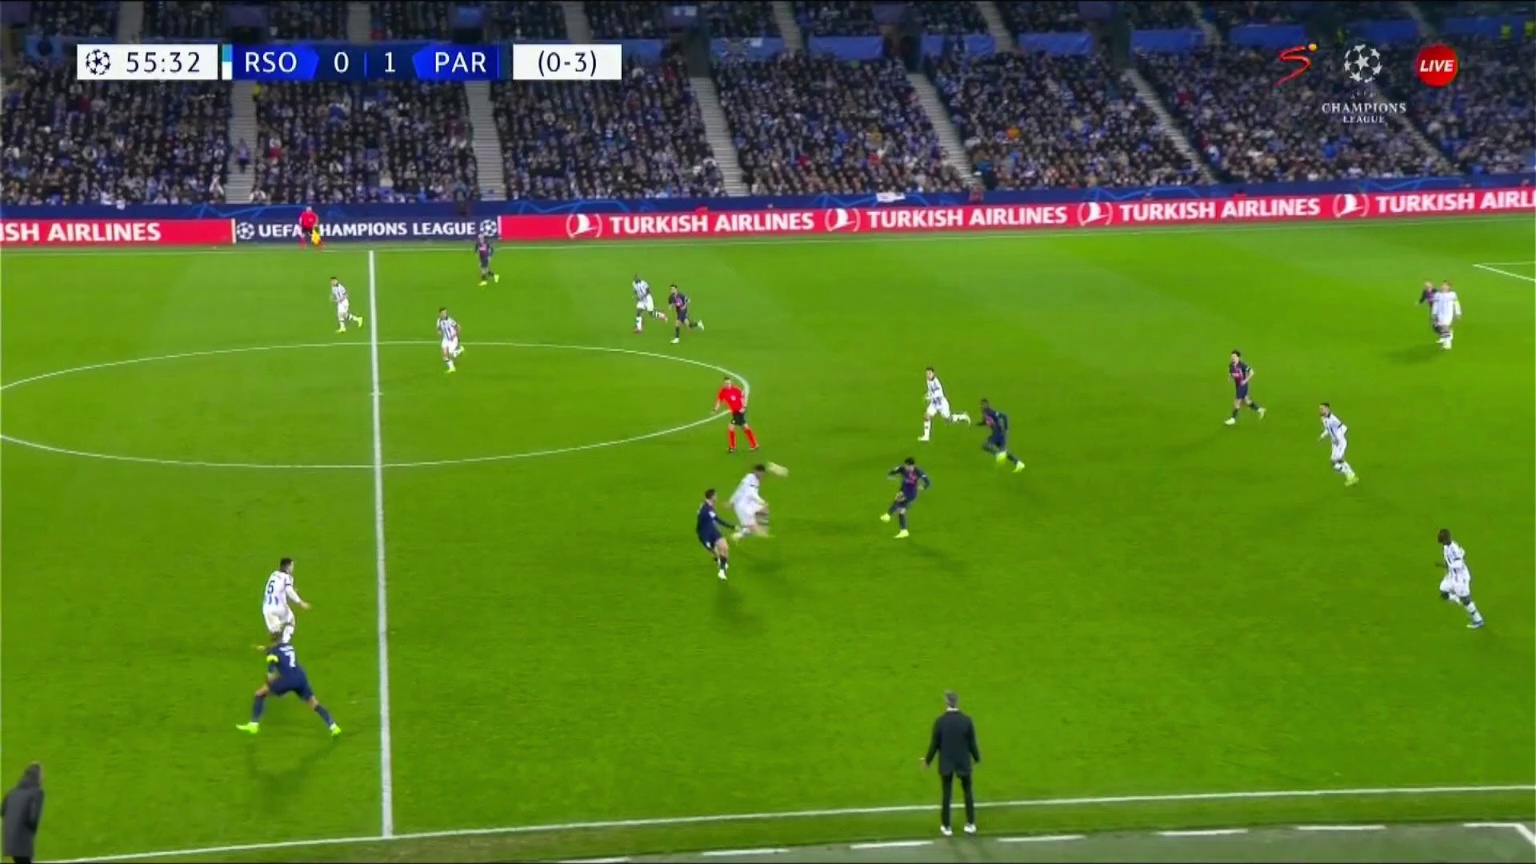 Real Sociedad 0 - [2] Paris Saint-Germain - Kylian Mbappe 56â€Ž'â€Ž [0 - 4 on agg.]